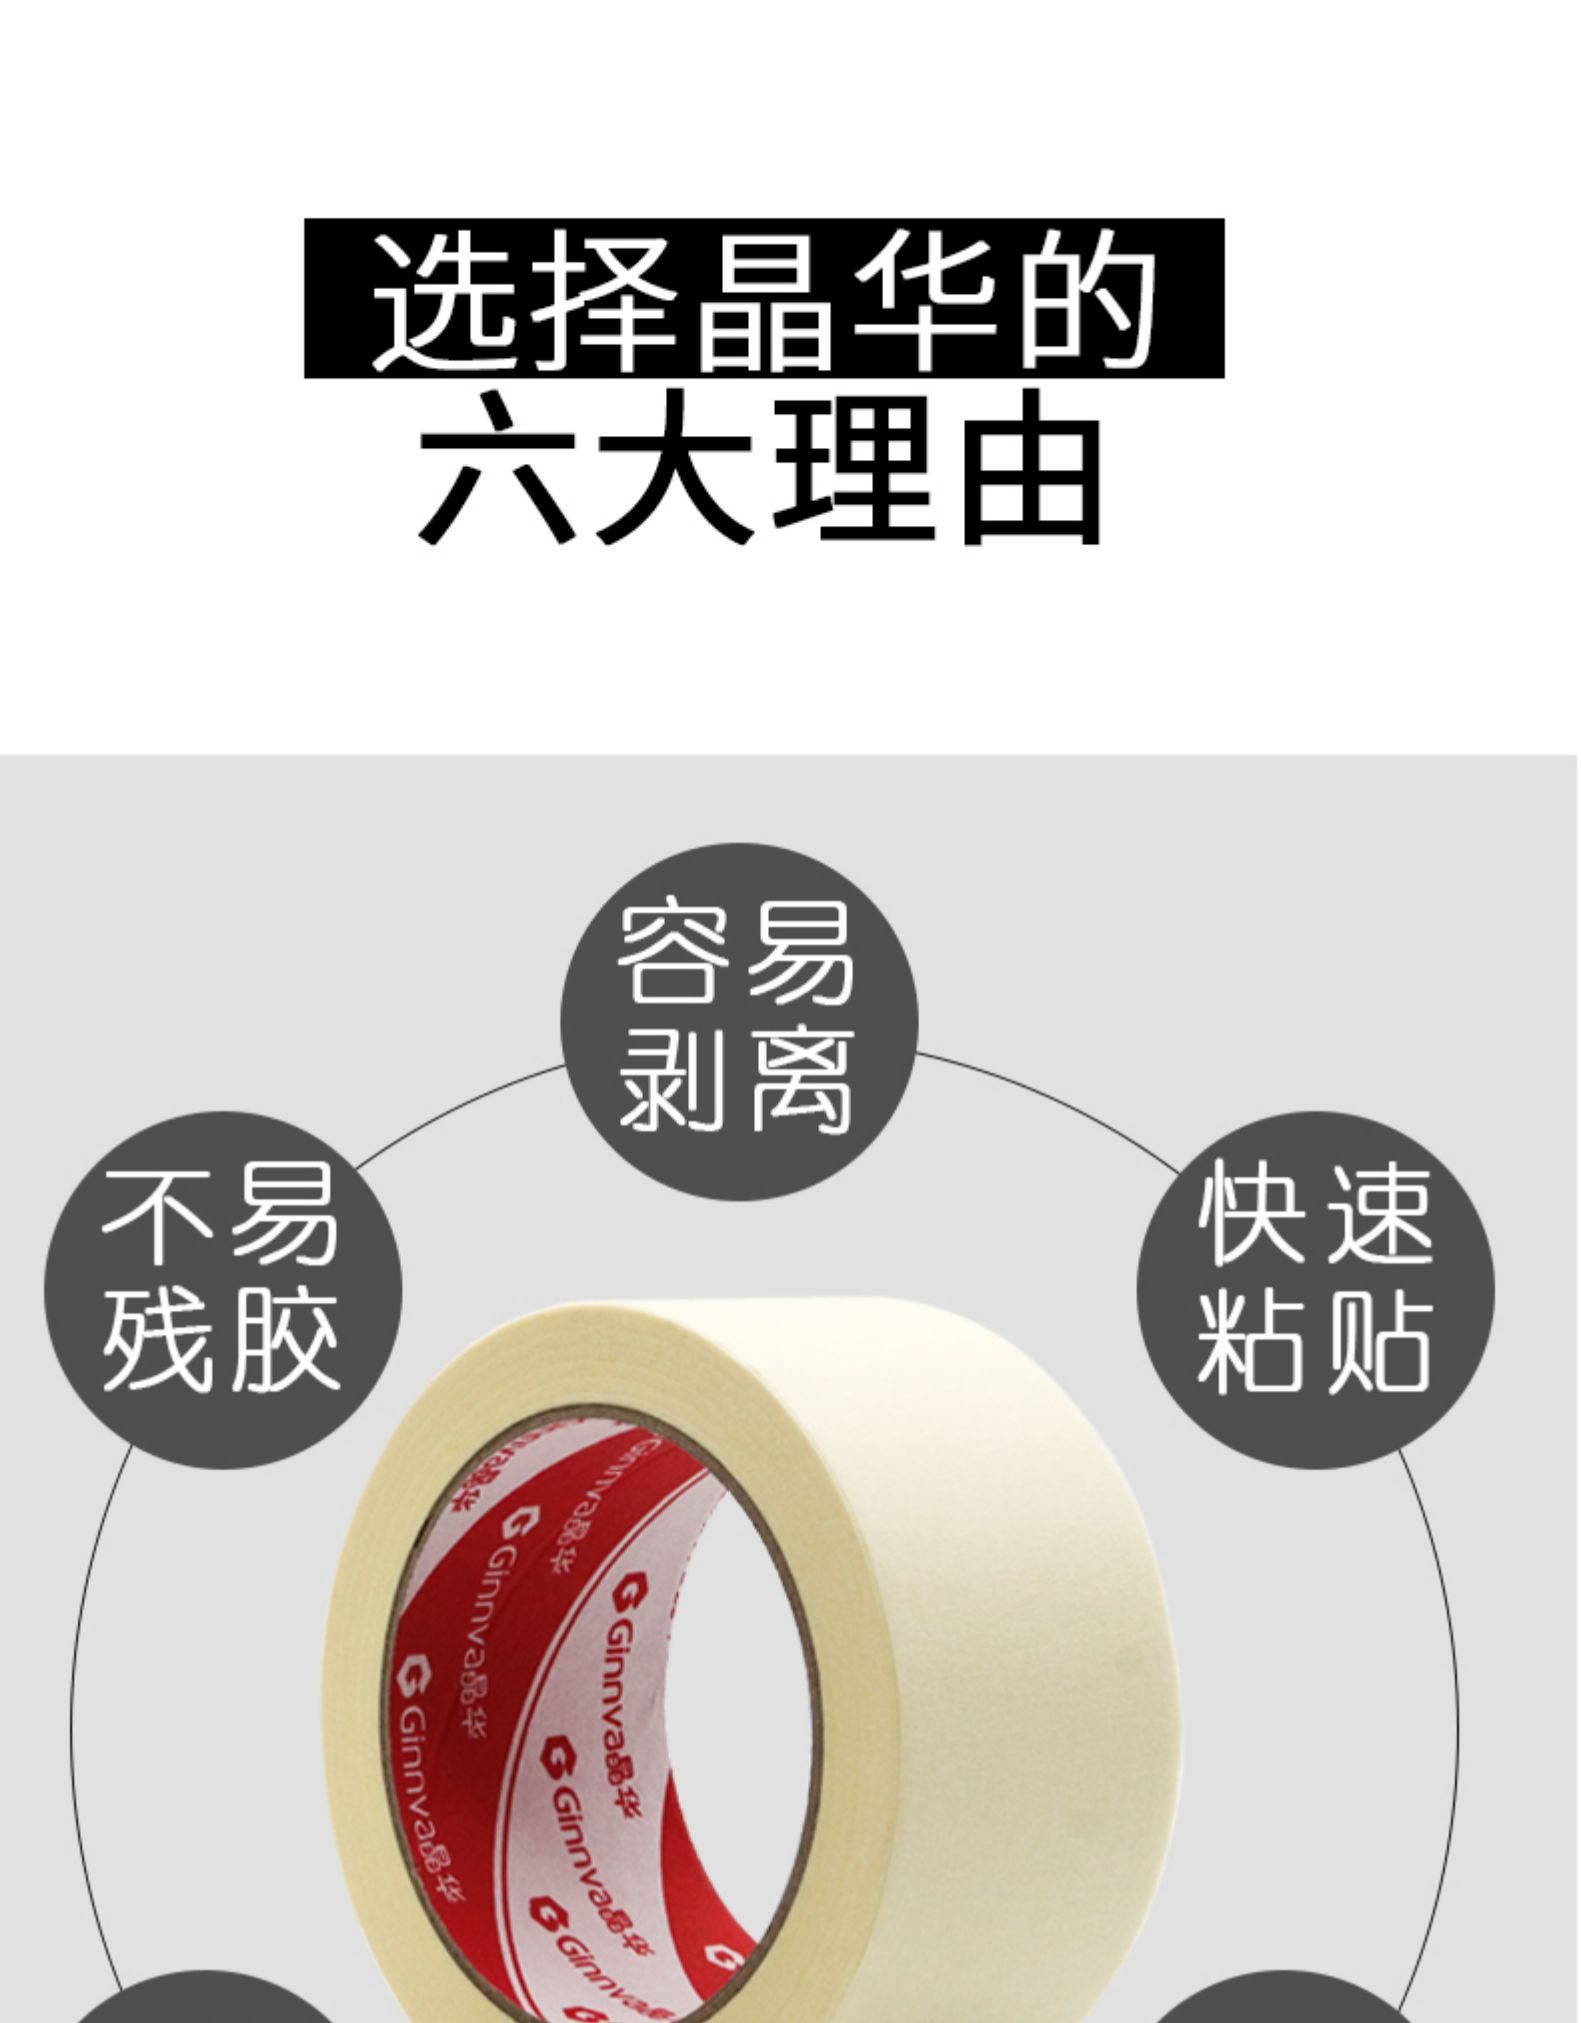 Băng dán mặt nạ chịu nhiệt độ Jinghua màu vàng trang trí có độ nhớt cao phun sơn mặt nạ băng giấy bảo vệ Băng keo tùy chỉnh 30 mét băng dính giấy